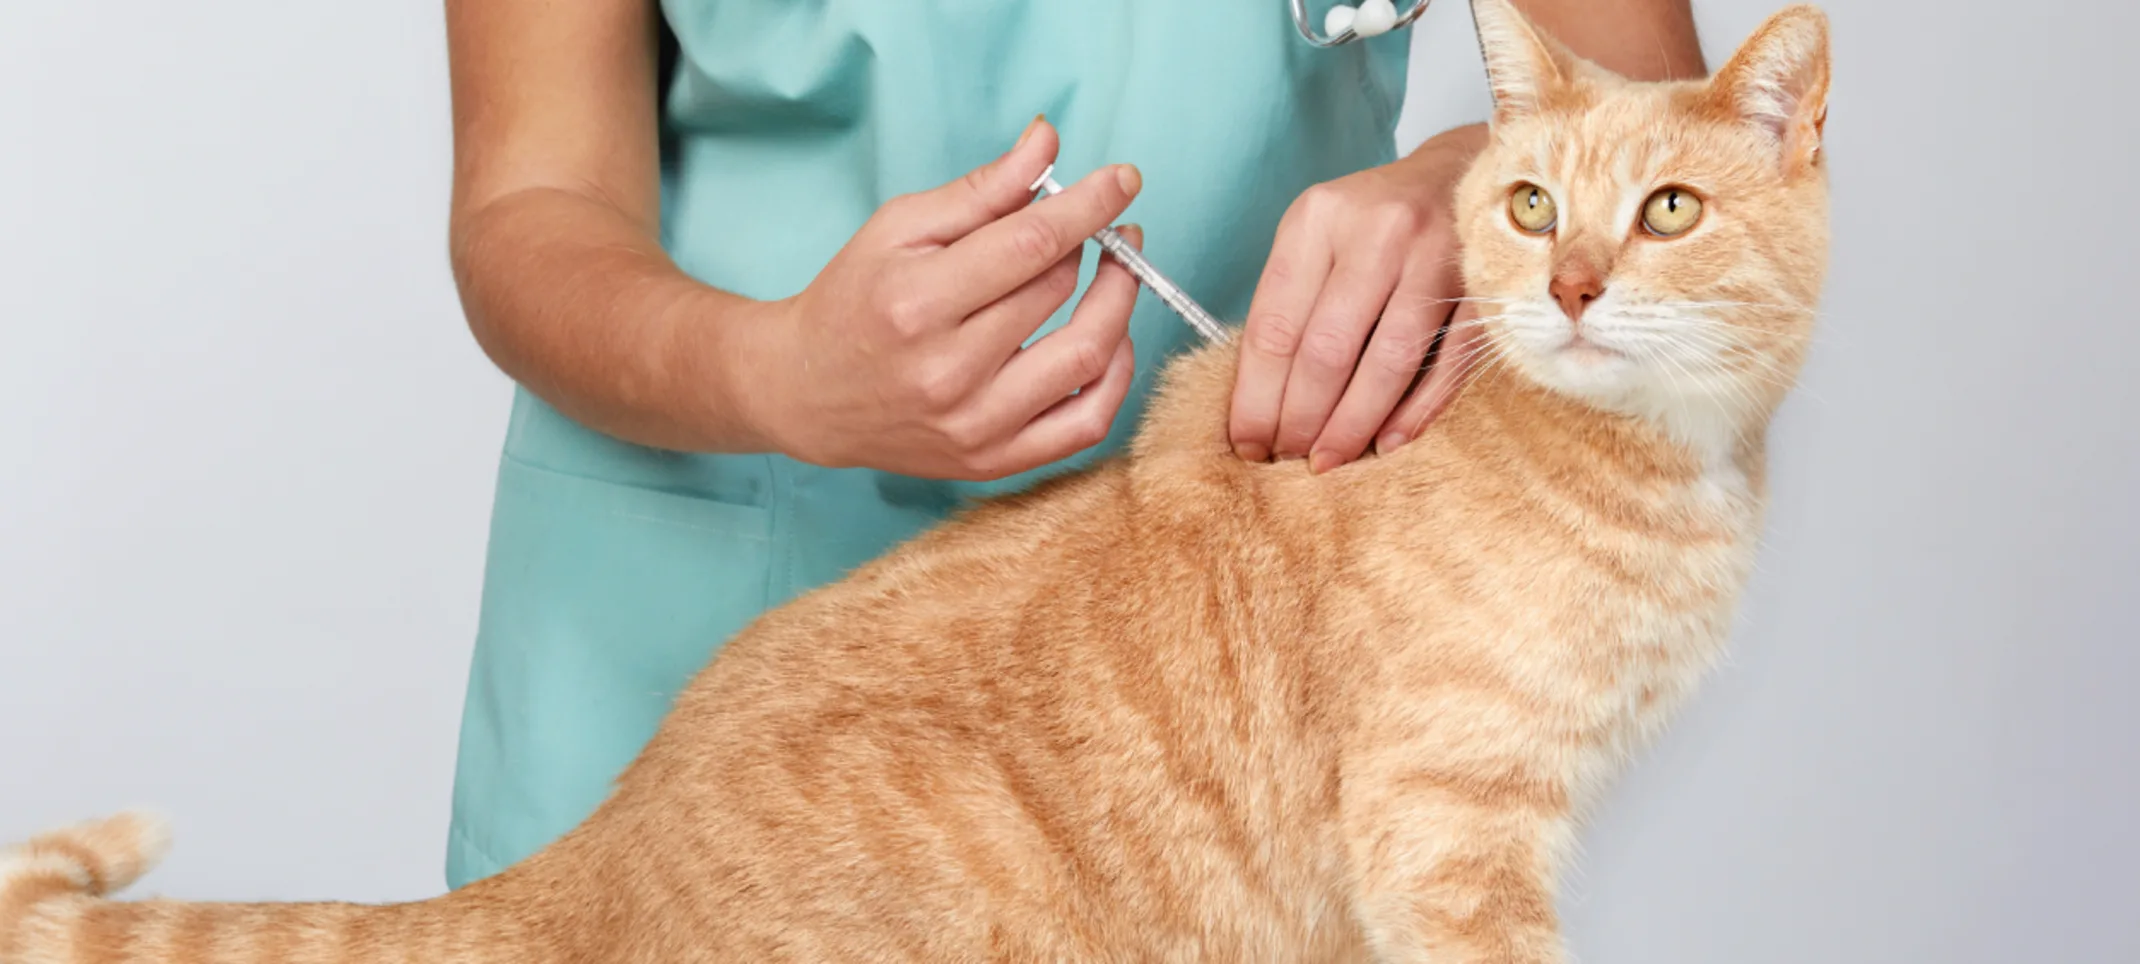 Cat getting a vaccine shot